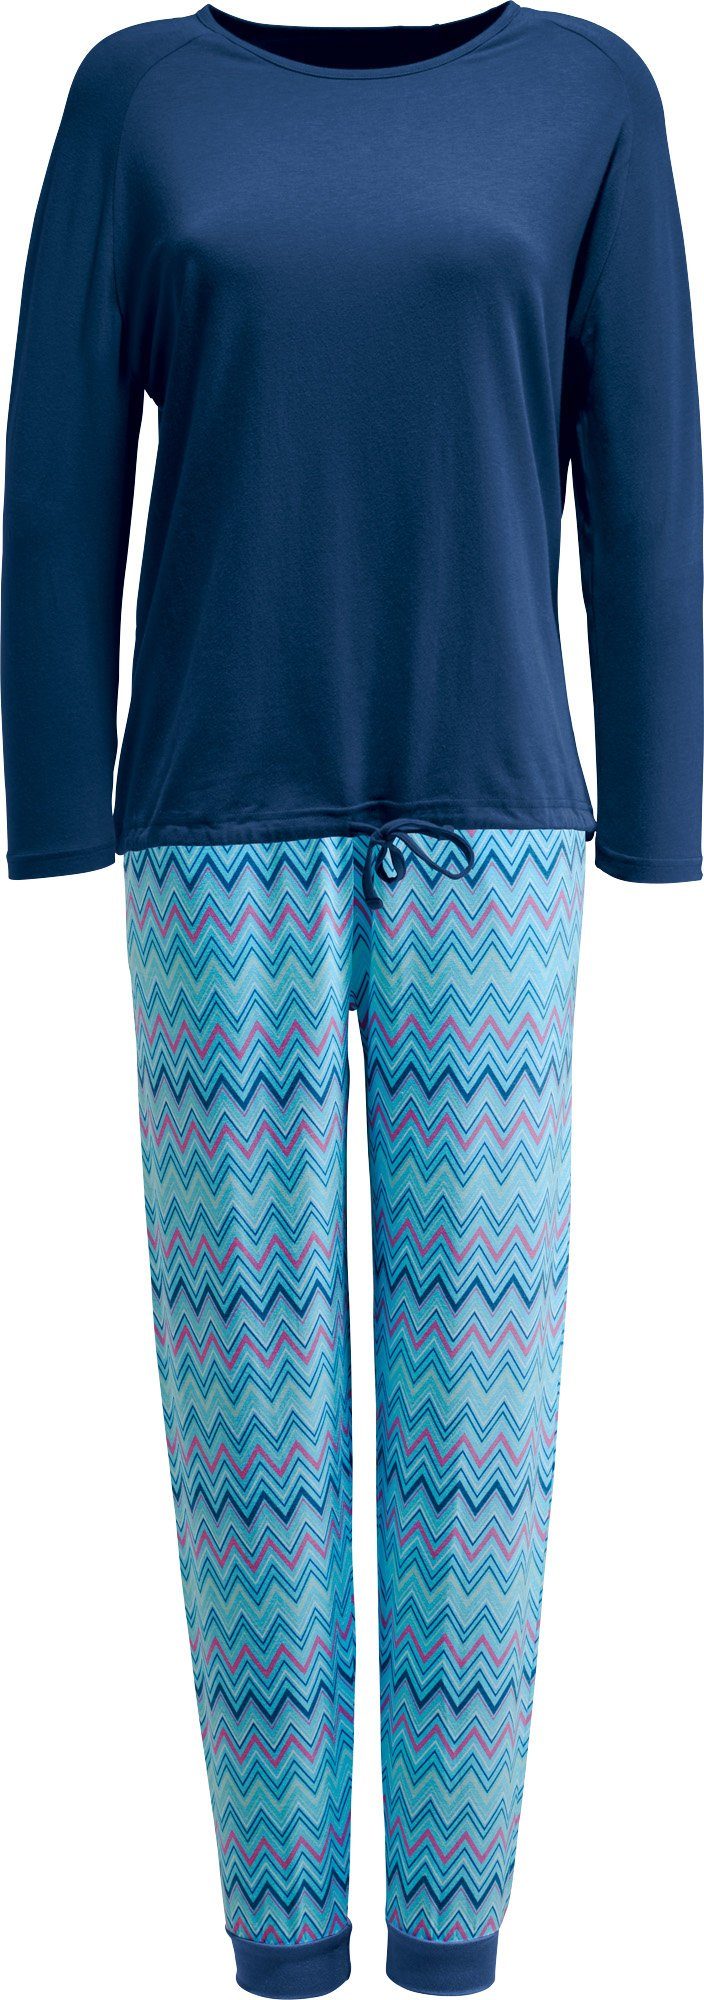 Damen-Schlafanzug Pyjama blau Erwin Müller Single-Jersey gemustert